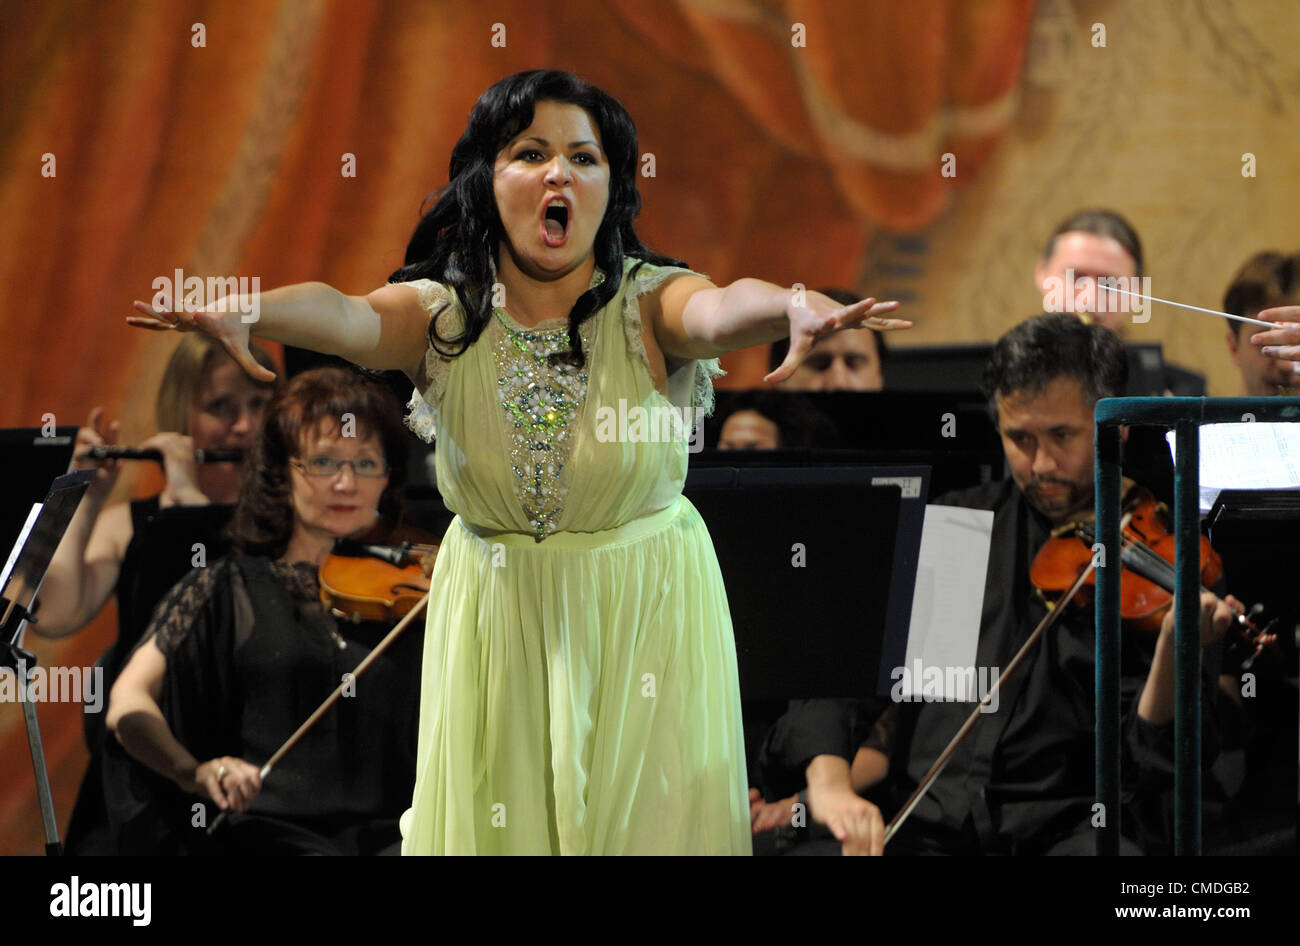 Julio 20, 2012 - San Petersburgo, Rusia - La ópera rusa superstar soprano Anna Netrebko realizar en San Petersburgo, Rusia. (Crédito de la Imagen: © PhotoXpress/ZUMAPRESS.com) Foto de stock